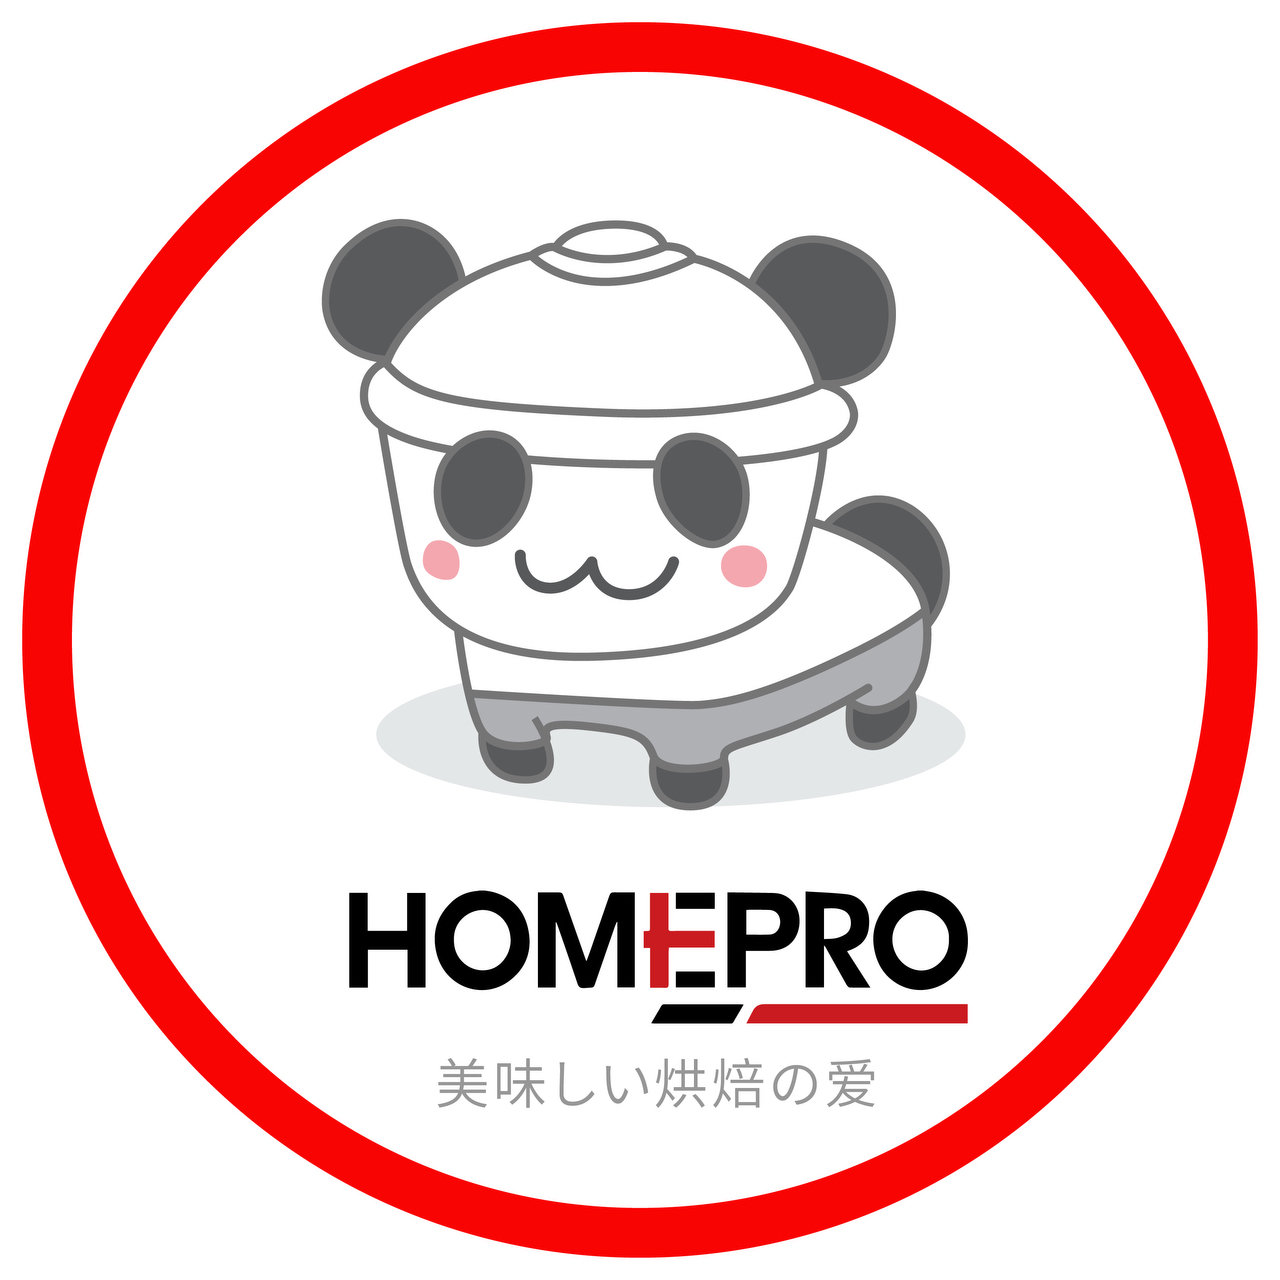 Homepro烘焙